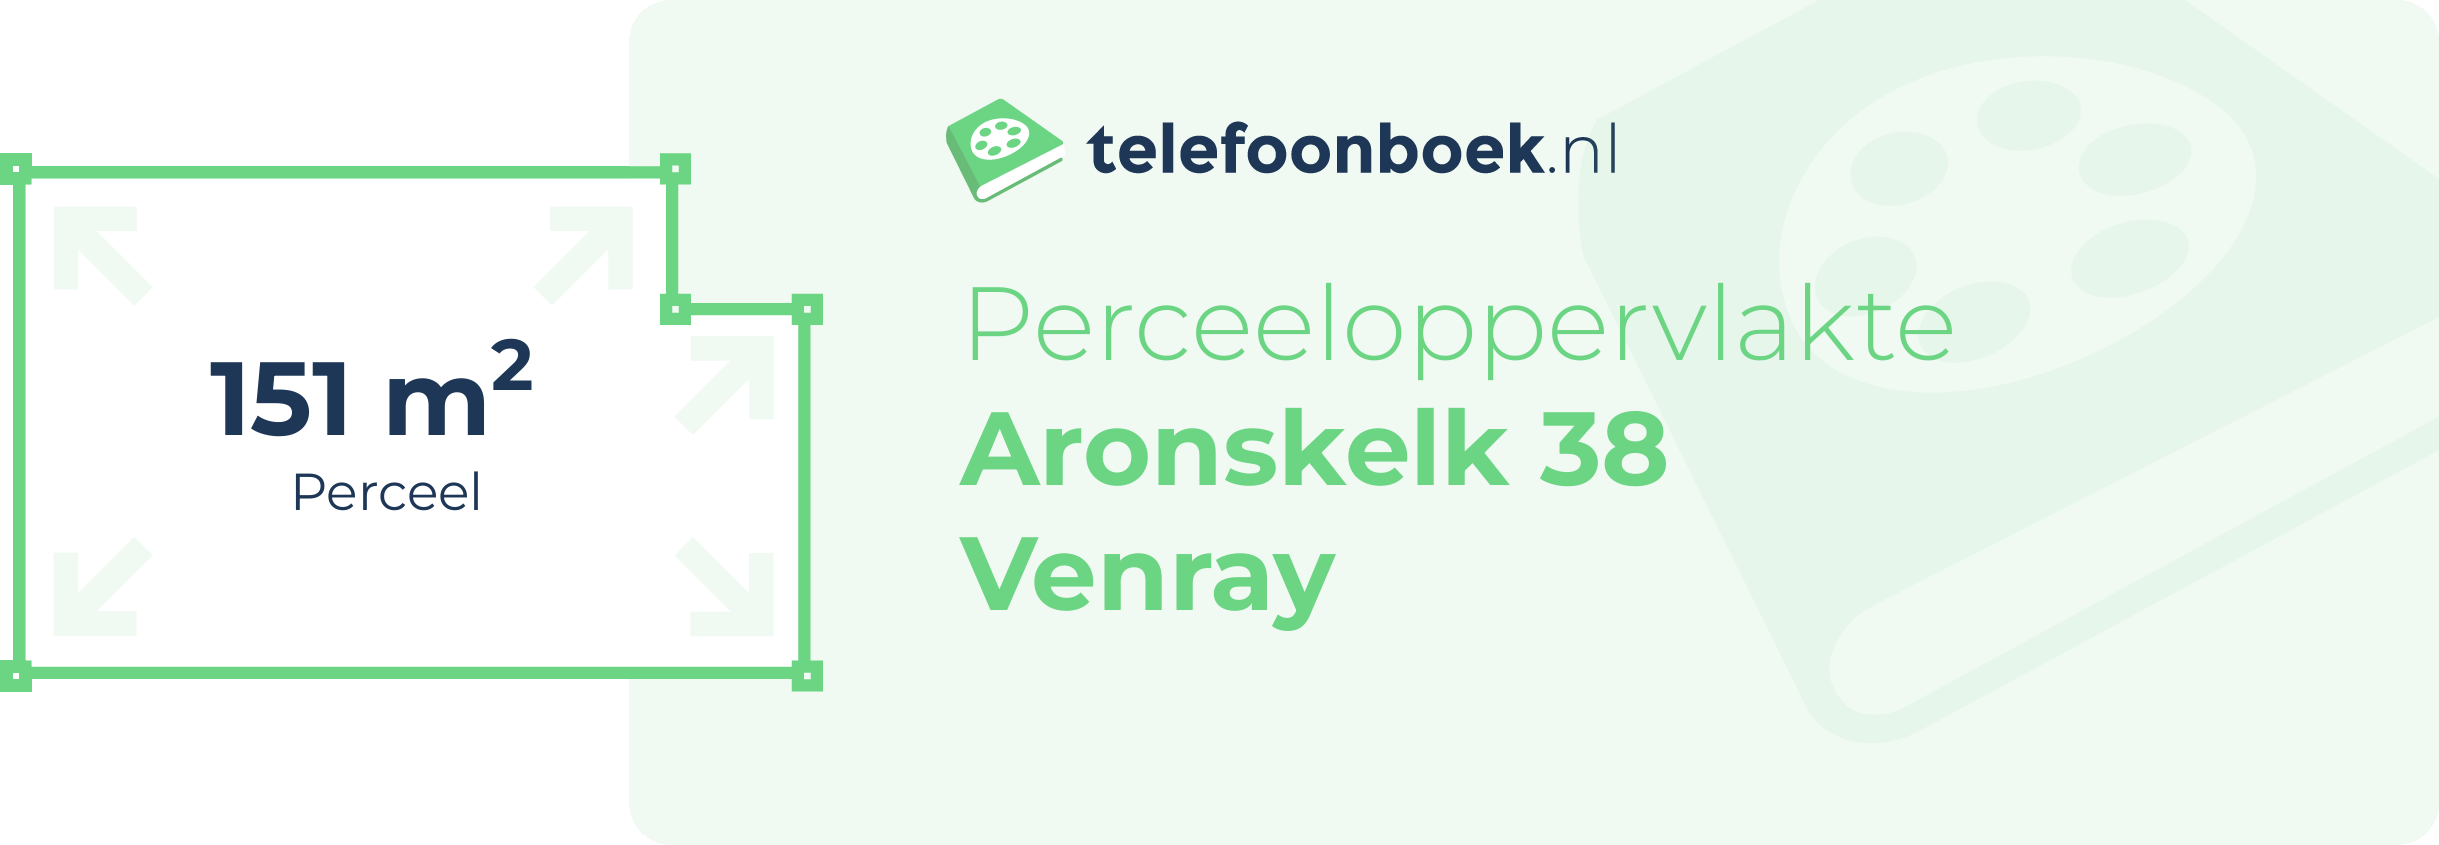 Perceeloppervlakte Aronskelk 38 Venray